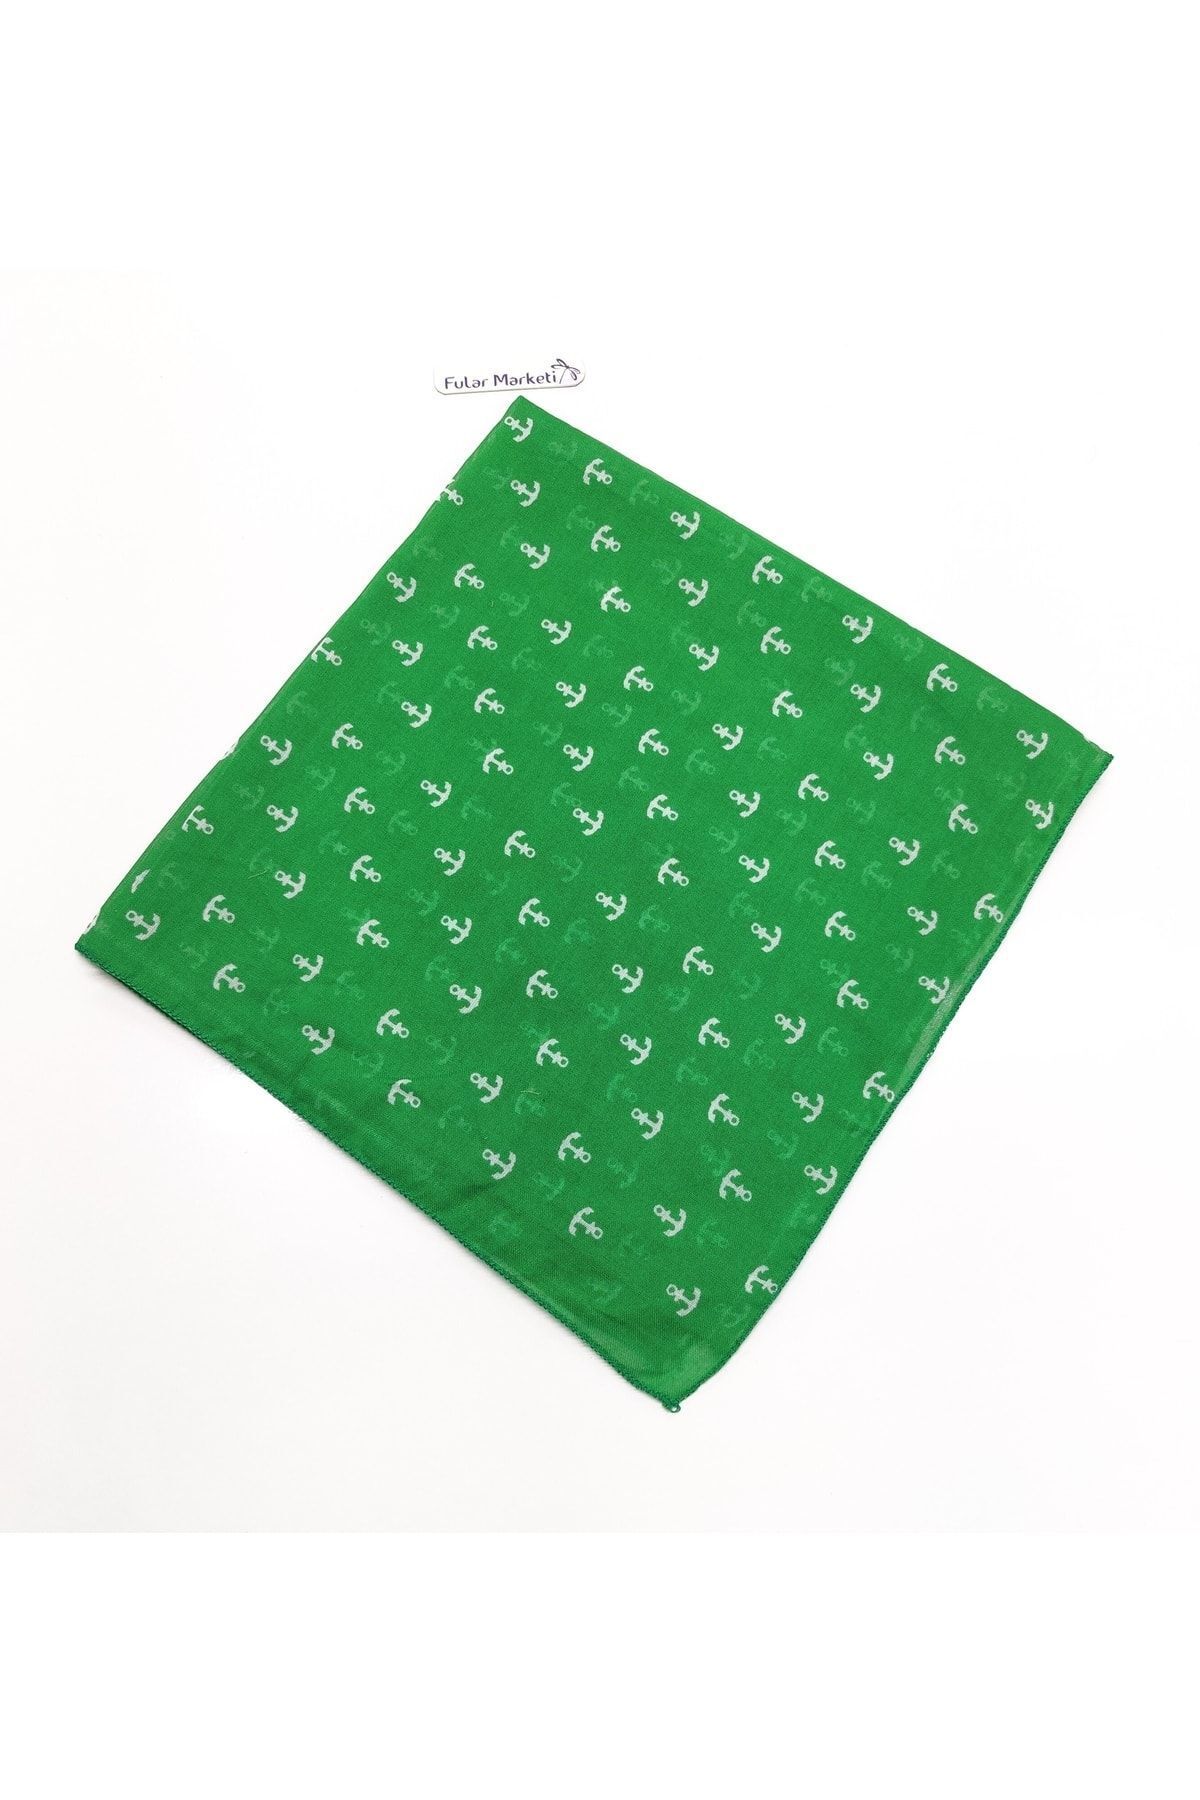 Fular Marketi %100 Pamuk Capa Desenli Benetton Yeşili Sepete 5 Adet Ekle 4 Adet Öde Kampanyalı 1 Adet Fiyatıdır